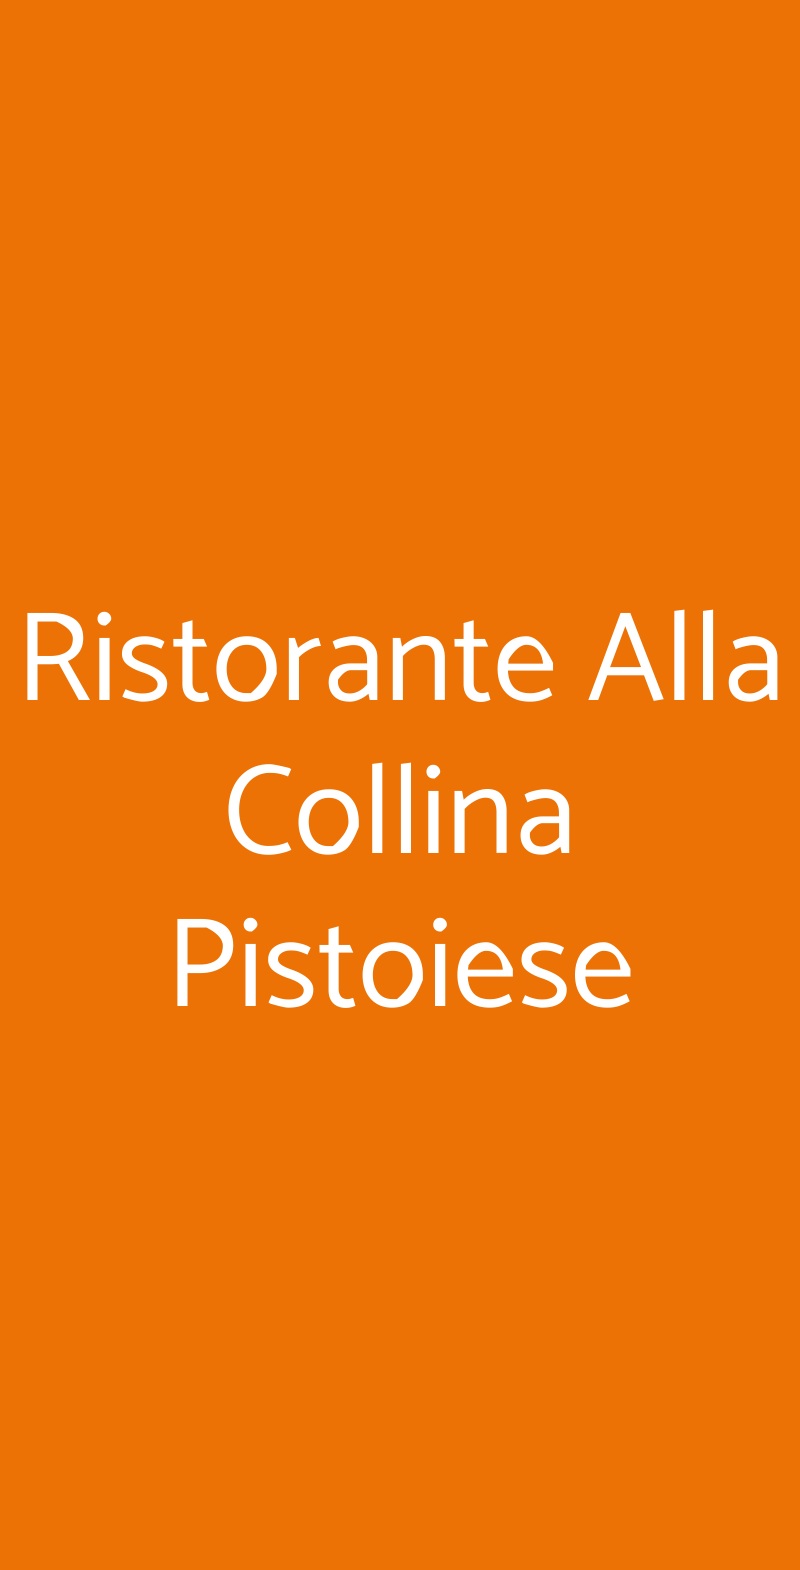 Ristorante Alla Collina Pistoiese Milano menù 1 pagina